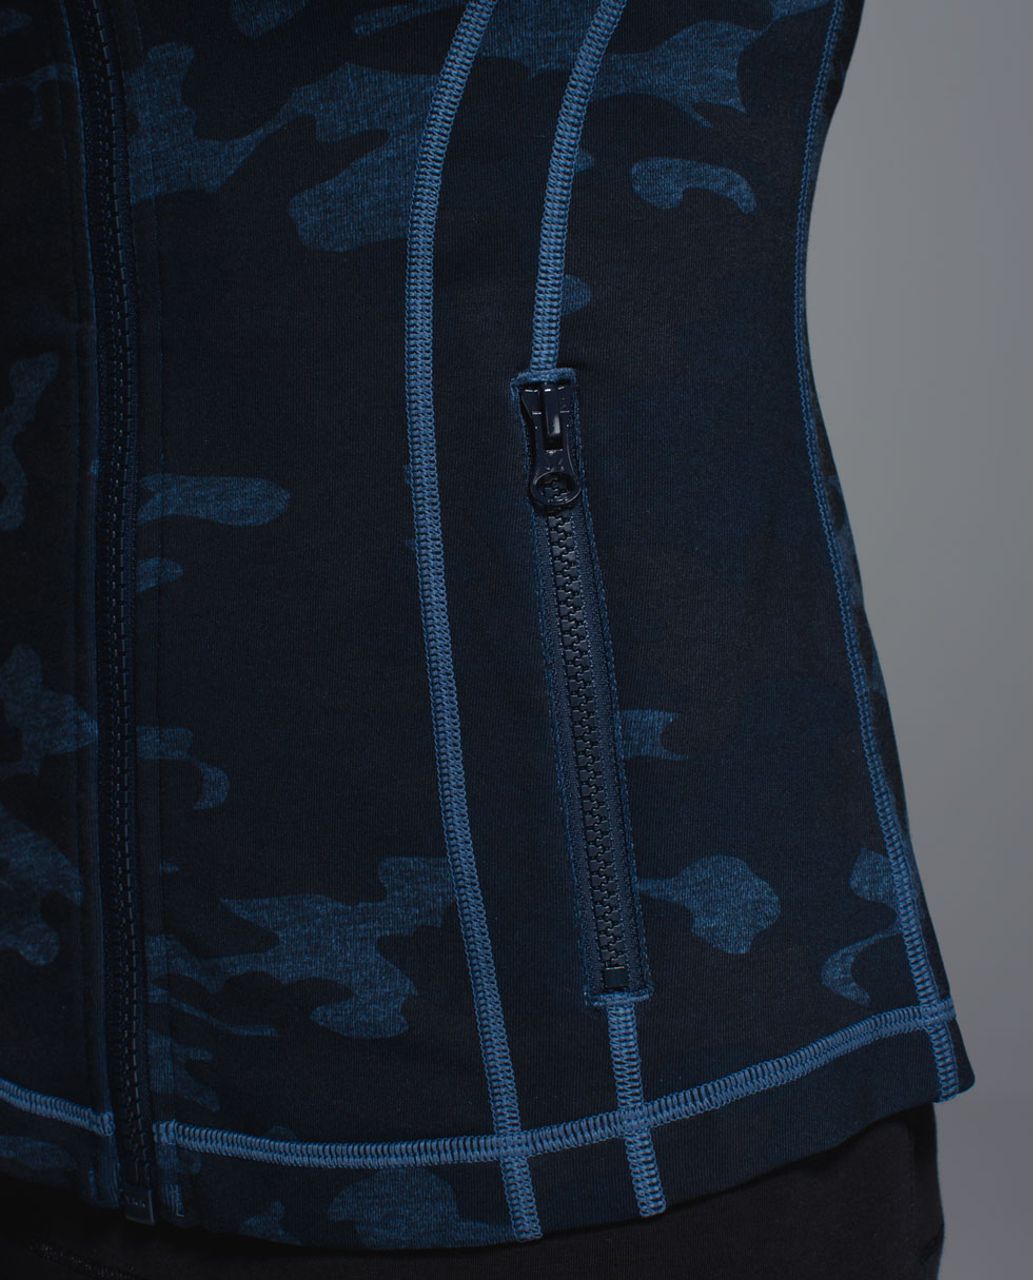 Lululemon Define Jacket - Heathered Texture Lotus Camo Oil Slick Blue